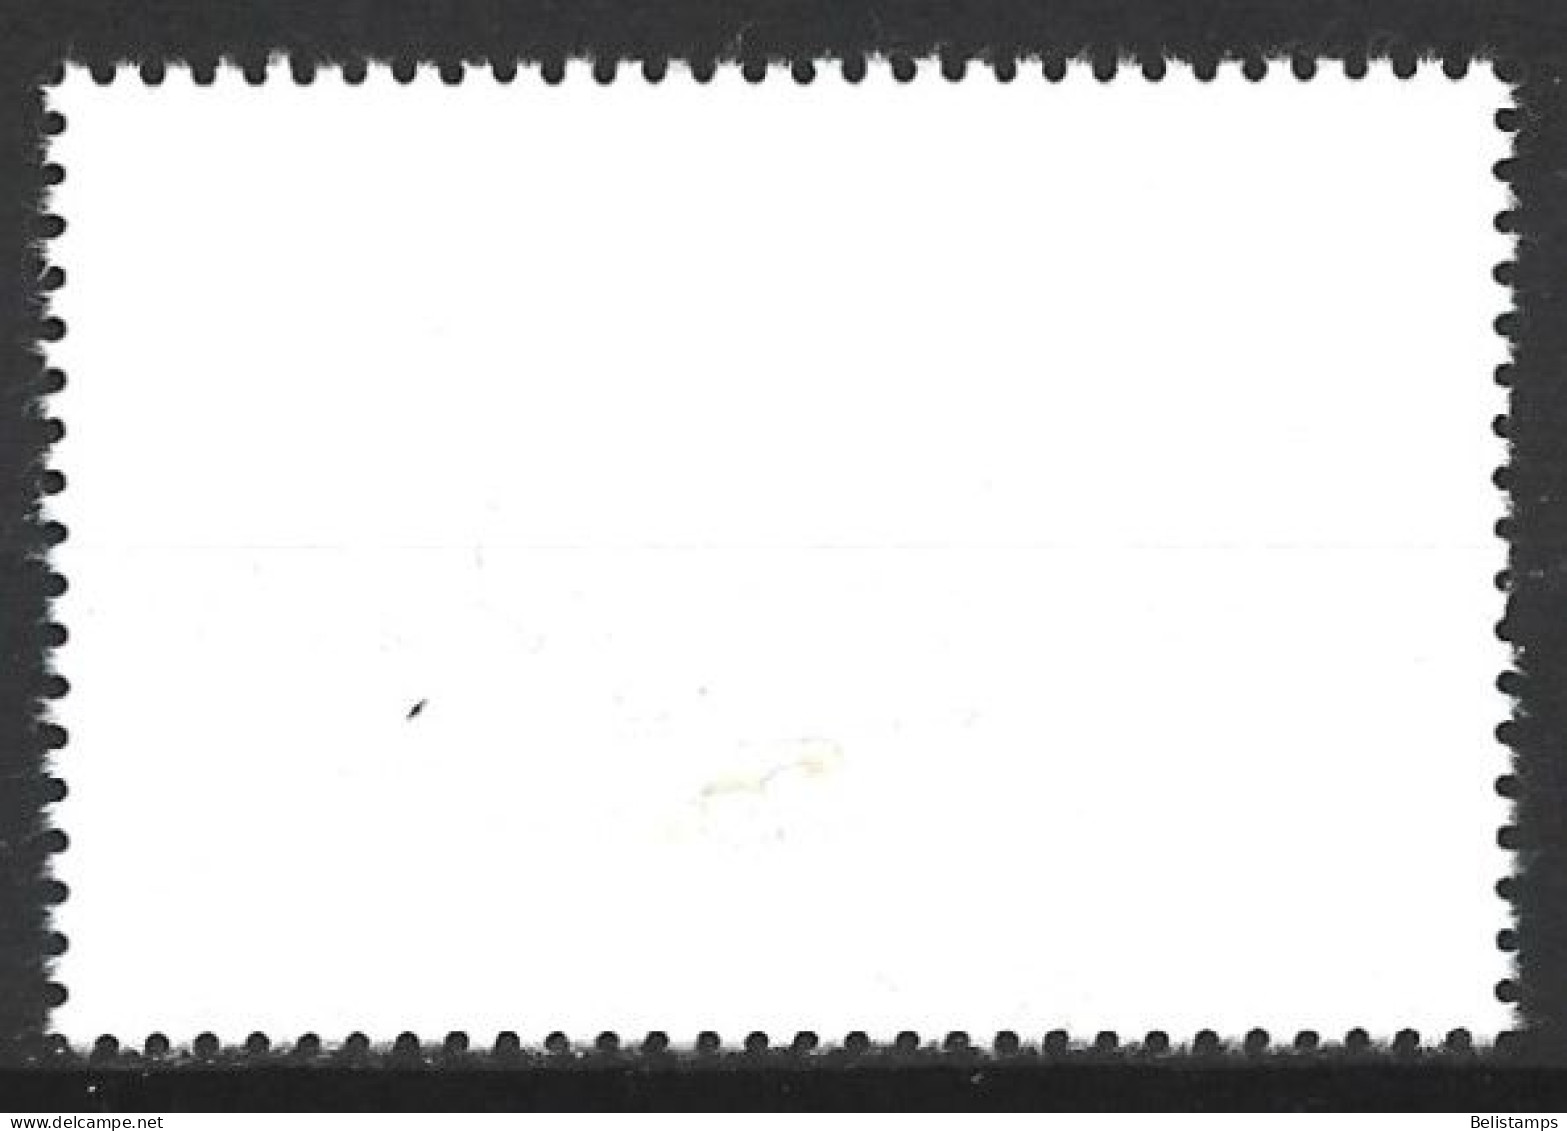 Cuba 1977. Scott #2161 (U) Intl. Airmail Service, 50th Anniv. - Used Stamps